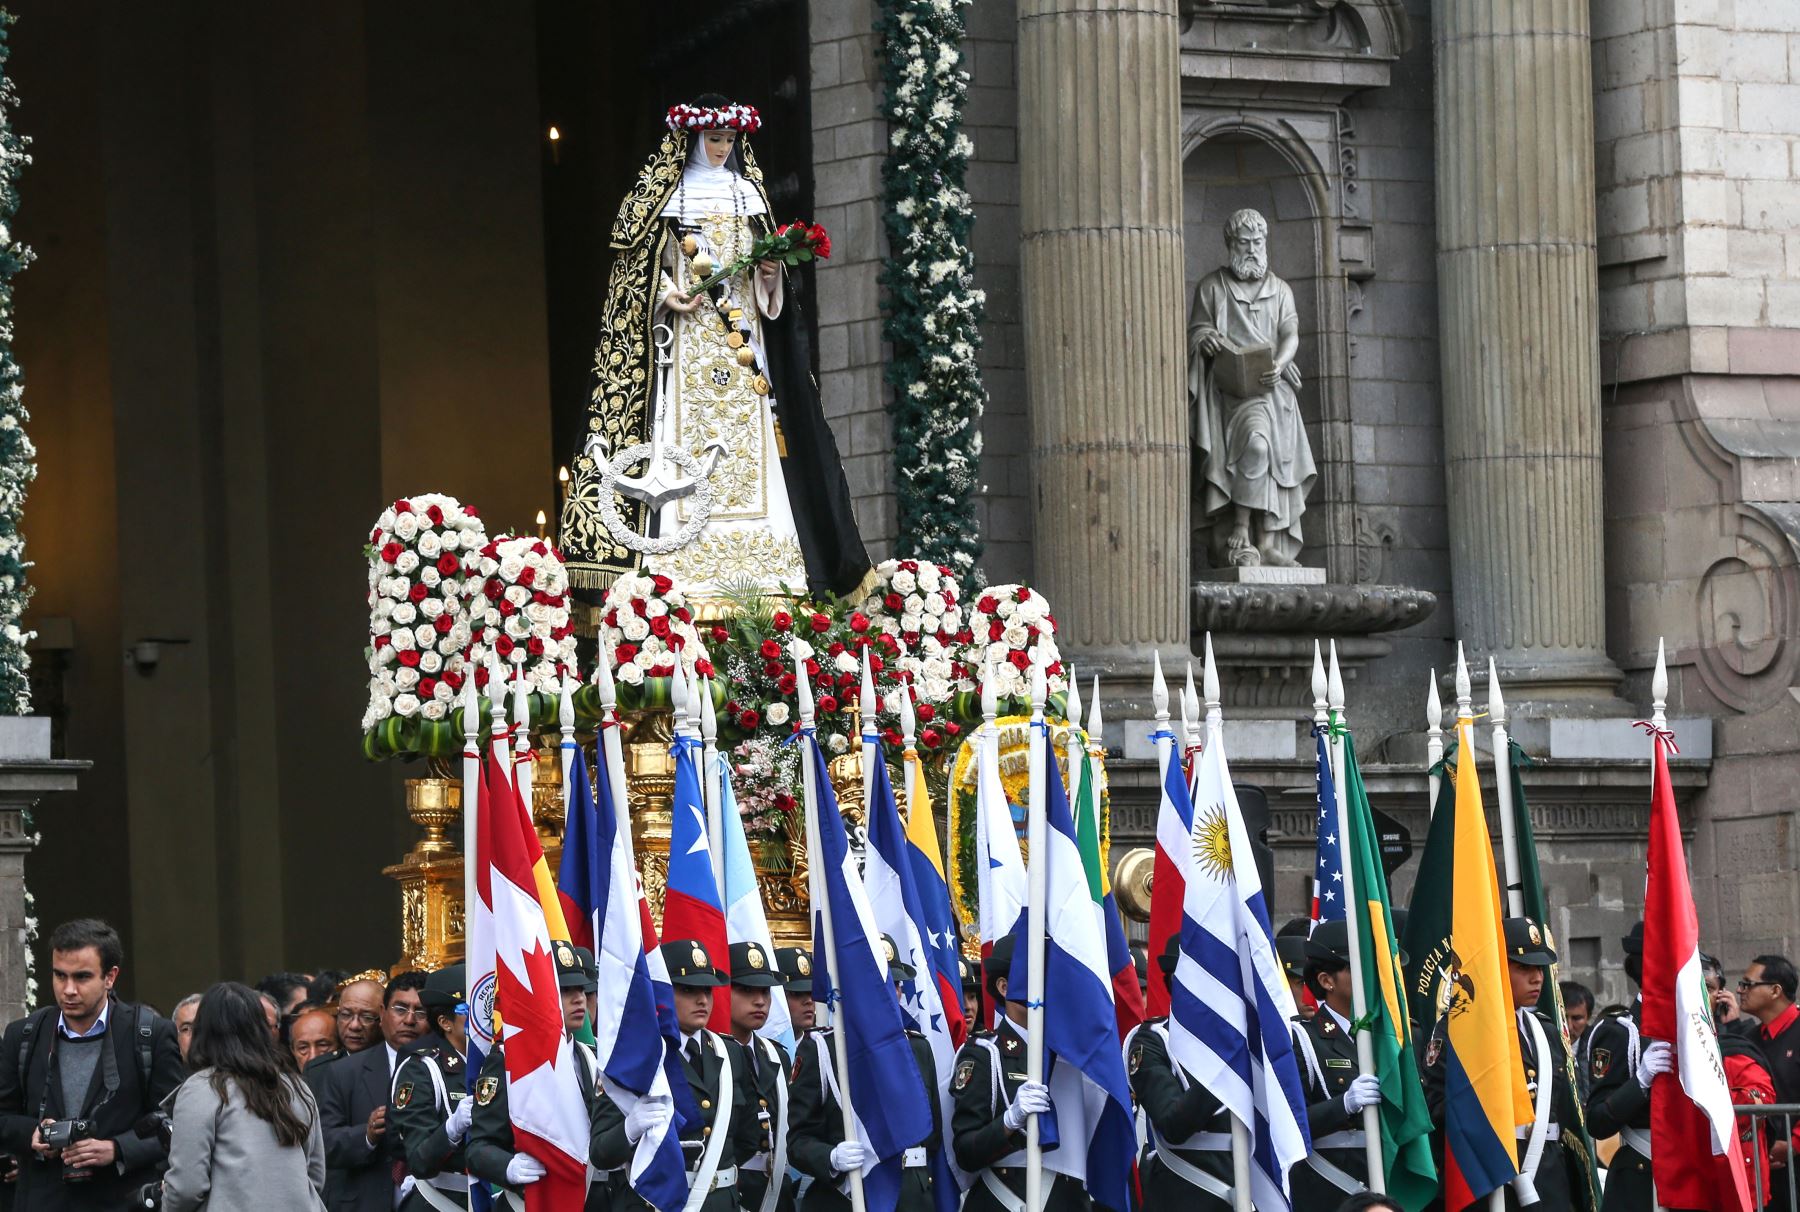 LIMA PERÚ, AGOSTO 30. Presidente de la República Pedro Pablo Kuczynski participa de una Misa de Acción de Gracias en honor a Santa Rosa de Lima, realizada en La Plaza de Armas. Foto: ANDINA/Norman Córdova